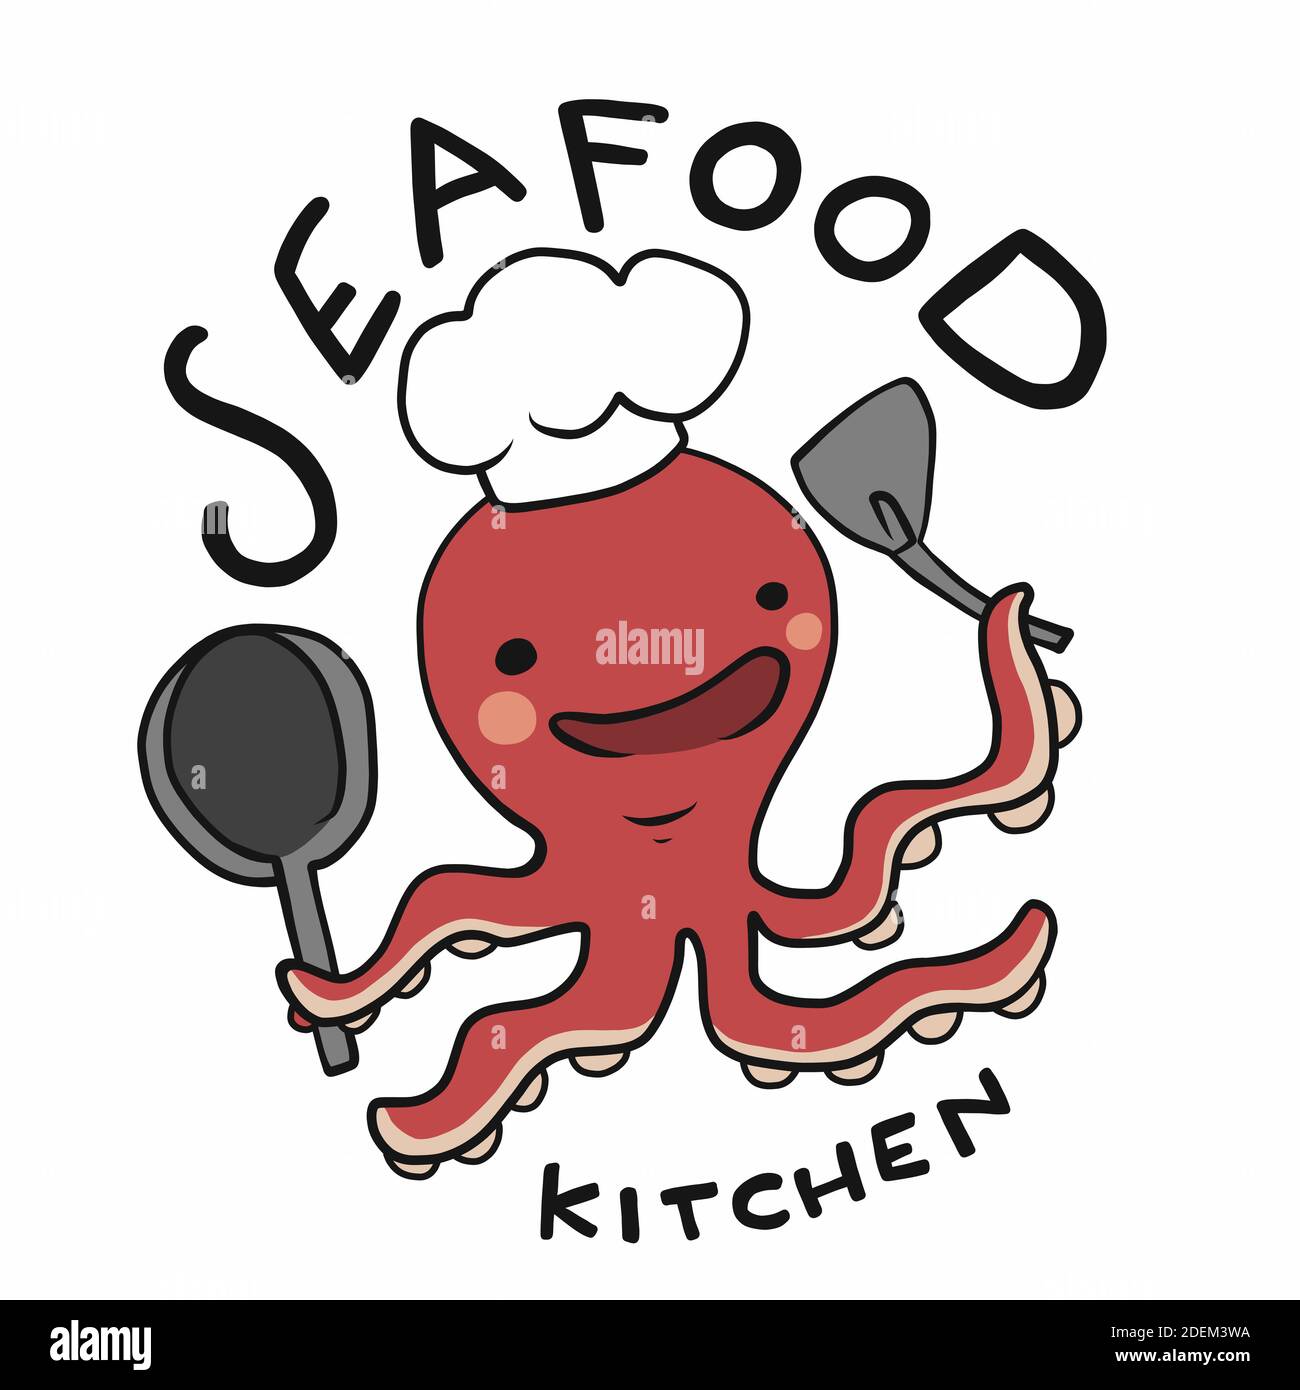 Logo de cuisine de fruits de mer, illustration vectorielle de dessin animé du chef Octopus Illustration de Vecteur